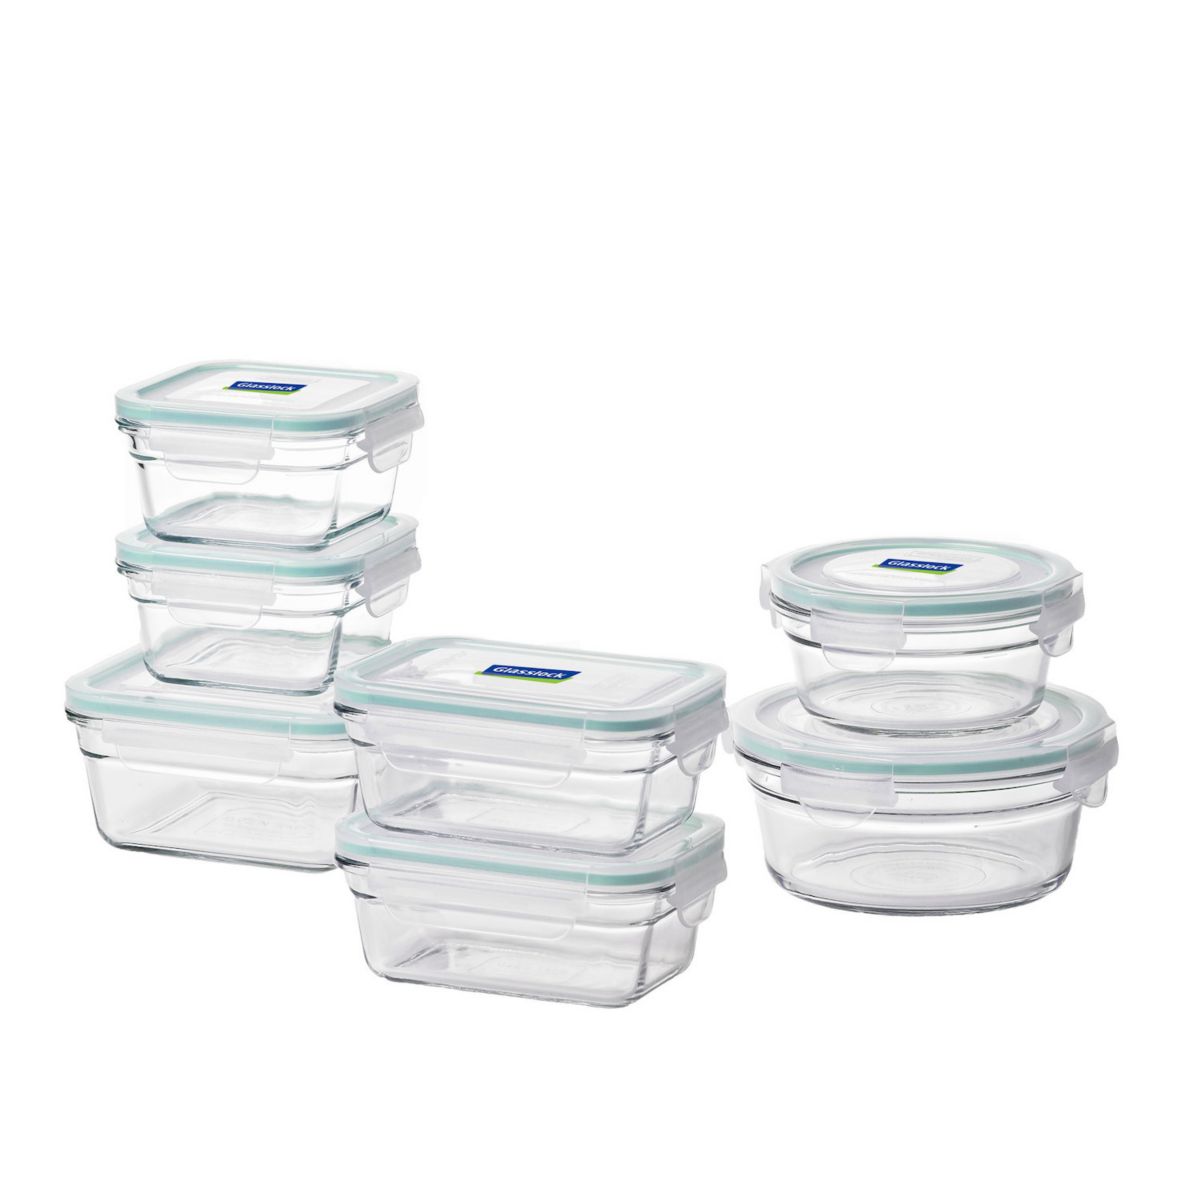 Стеклянные контейнеры для хранения пищевых продуктов Glasslock и микроволновые печи, безопасные для использования в микроволновой печи, набор из 14 предметов Glasslock